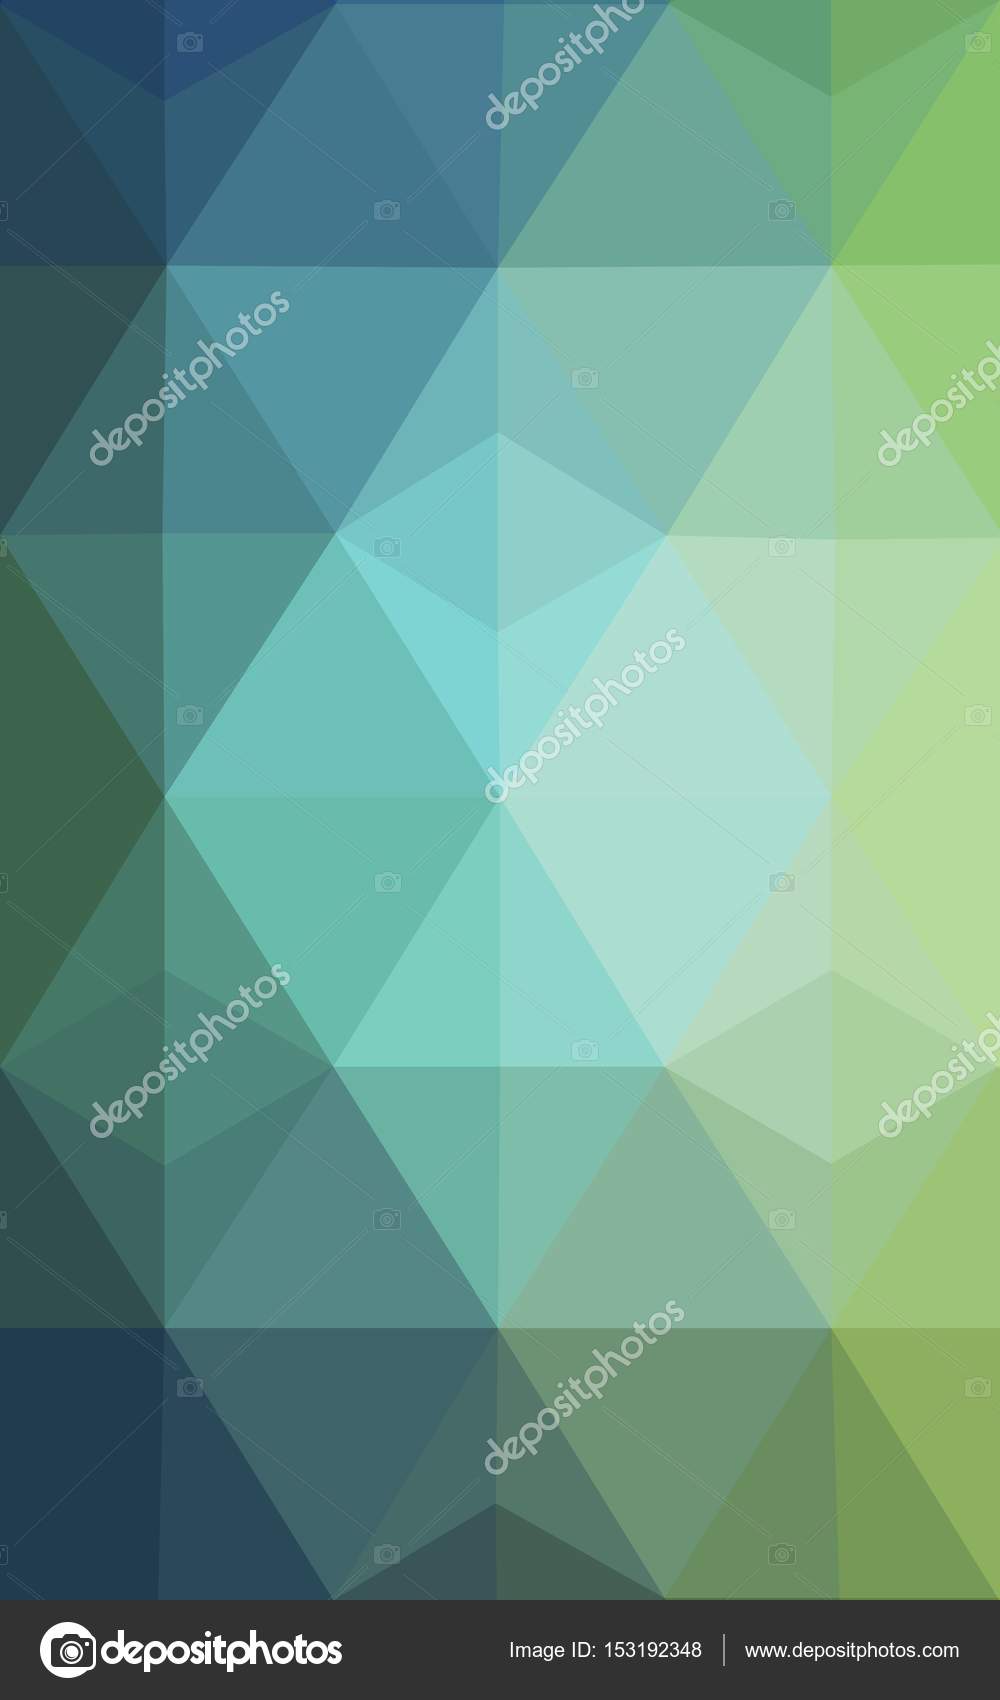 浅蓝色 绿色三角形马赛克背景与折纸样式的透明胶片 图库照片 C Smaria